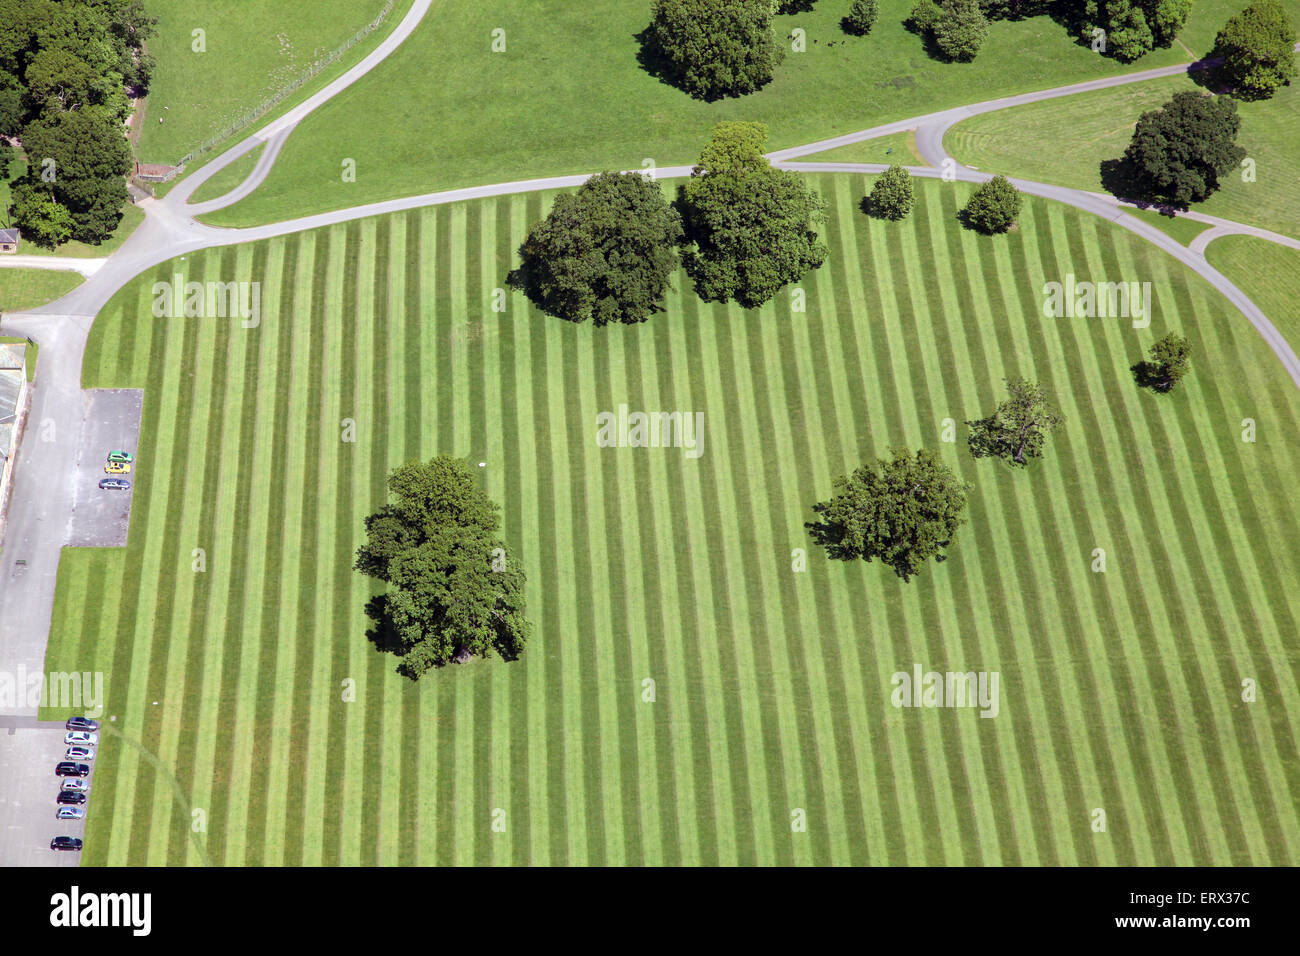 Vista aérea de un césped de hierba stripey seccionado, patrón con árboles, UK Foto de stock